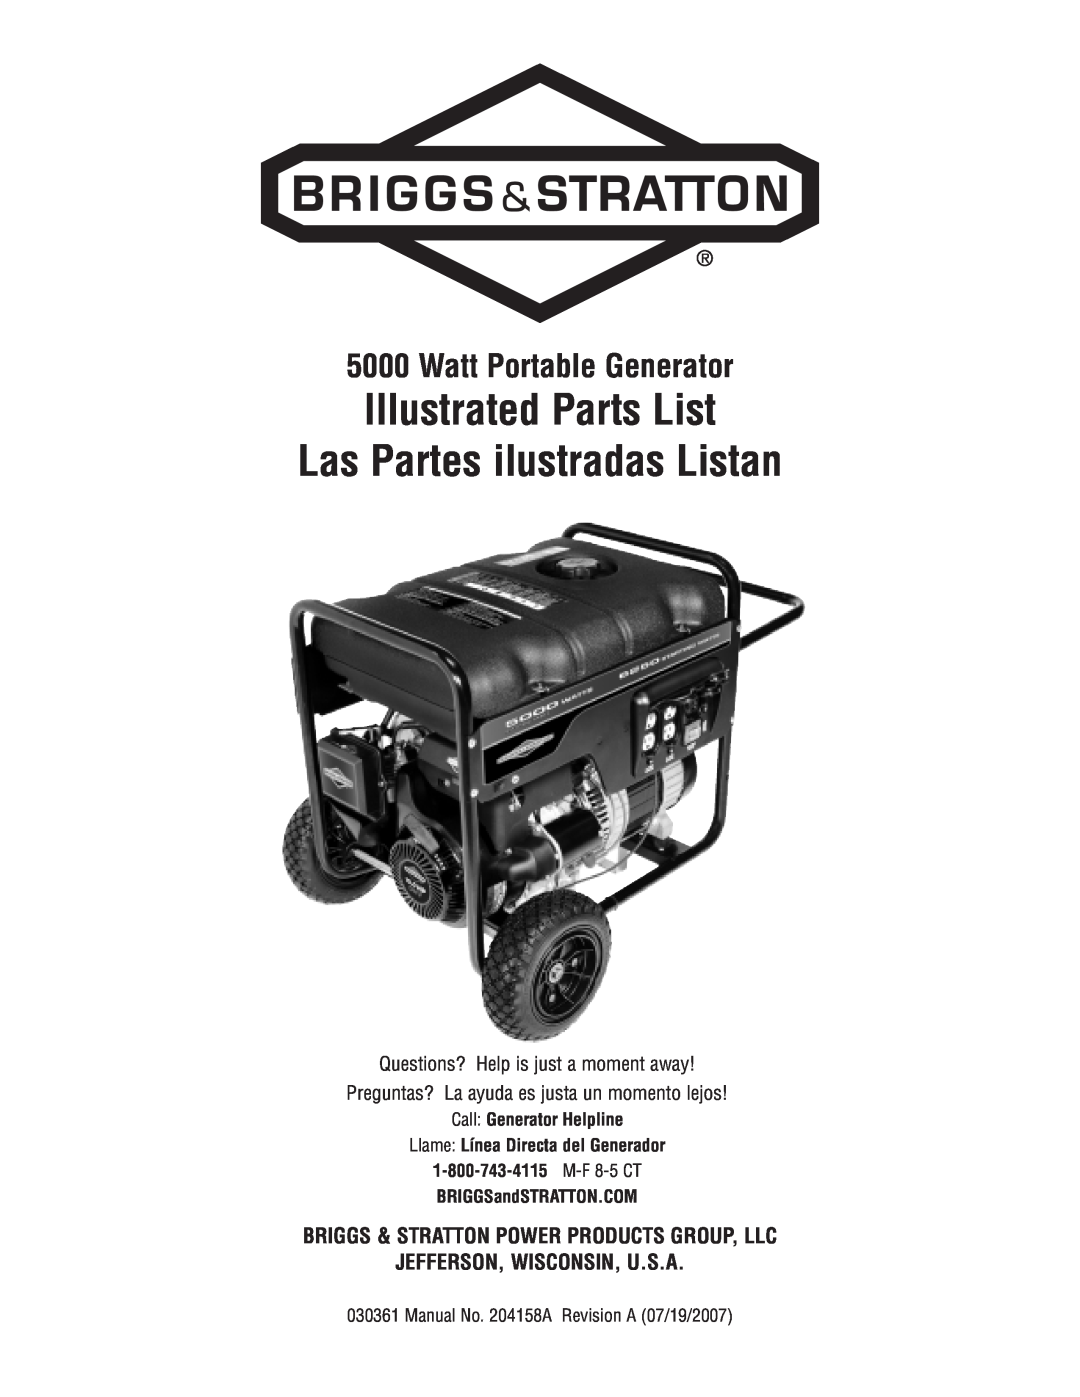 Briggs & Stratton 30361 manual Watt Portable Generator, Call Generator Helpline, Llame Línea Directa del Generador 